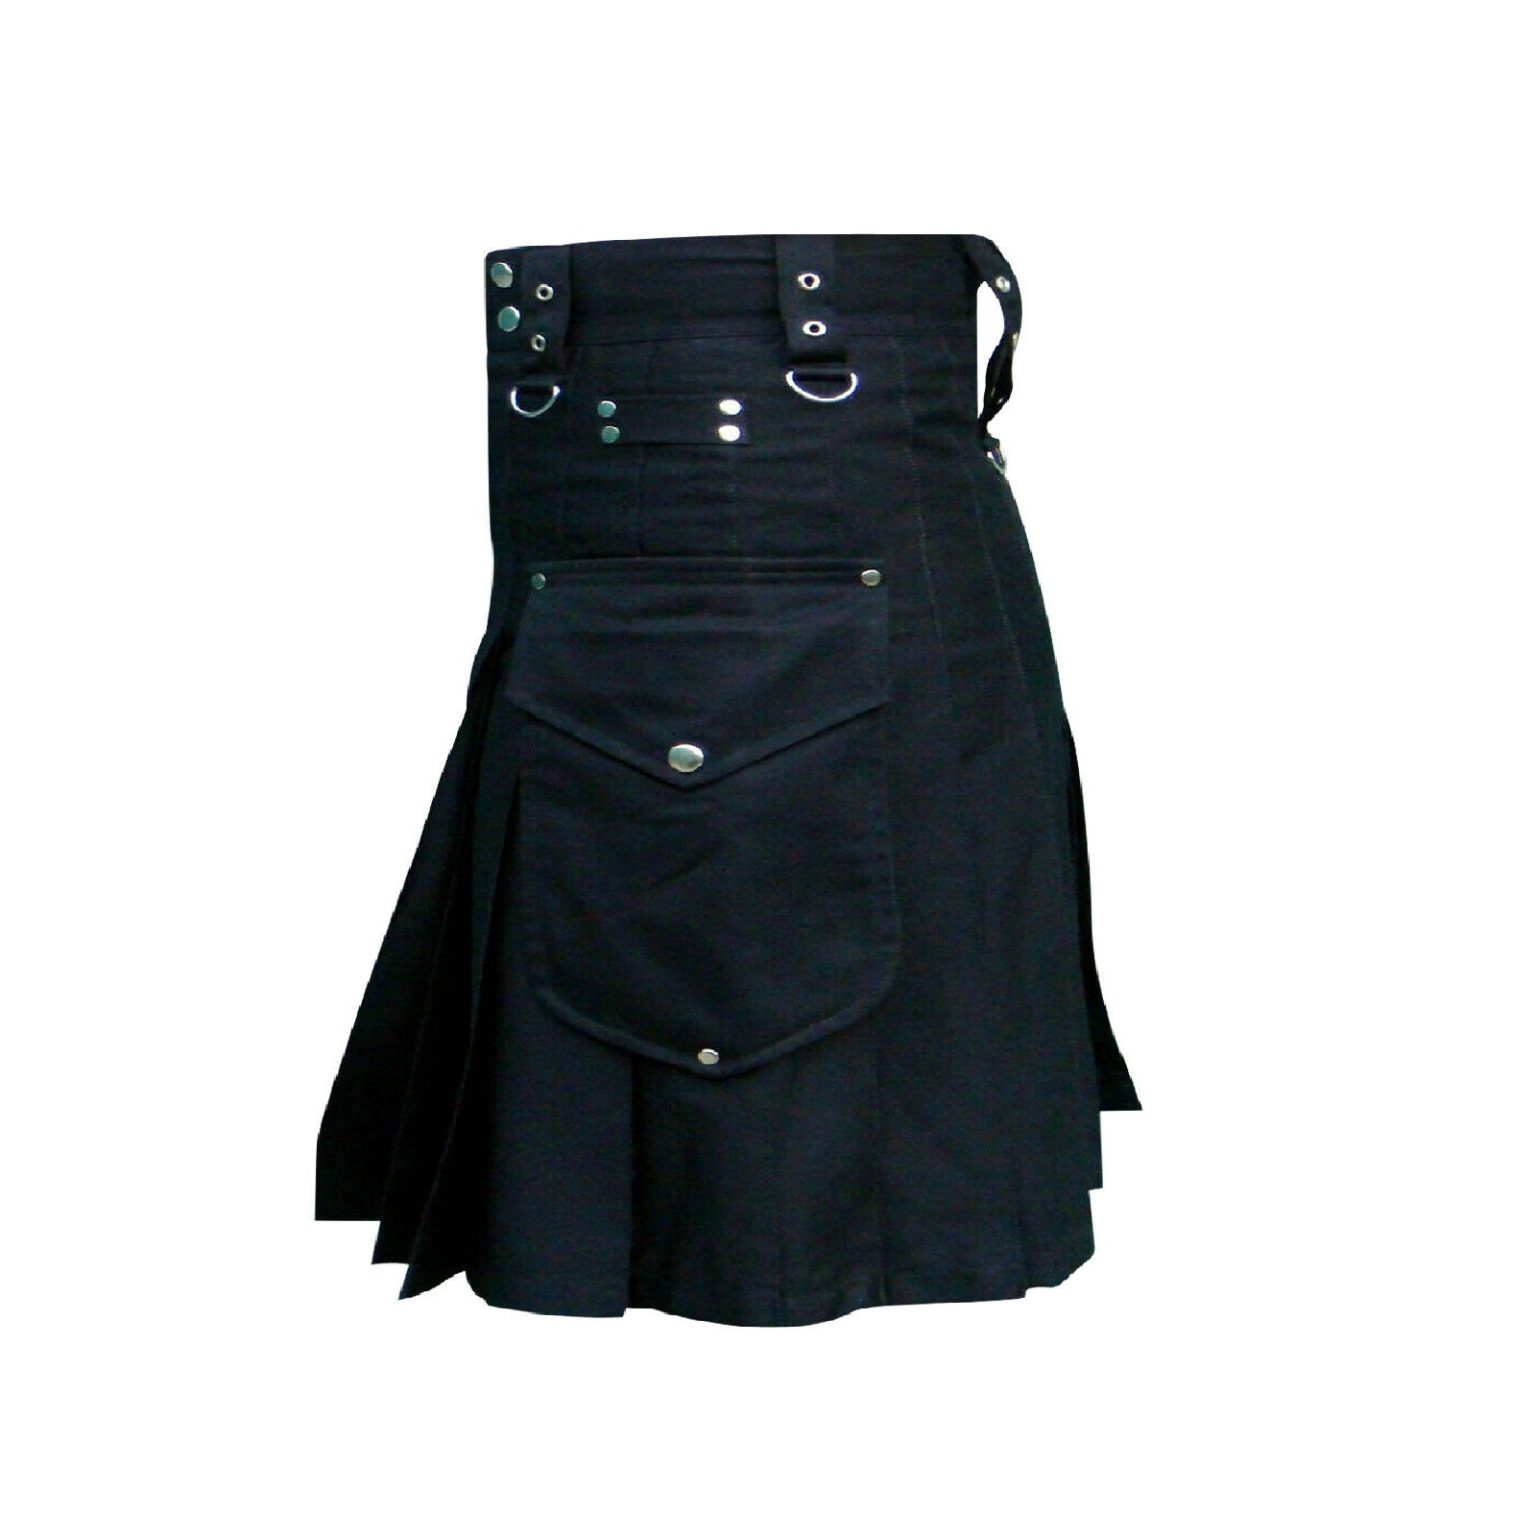 Black Utility Kilt For Policeman | Police Kilts For Sale Nov 2020 ...